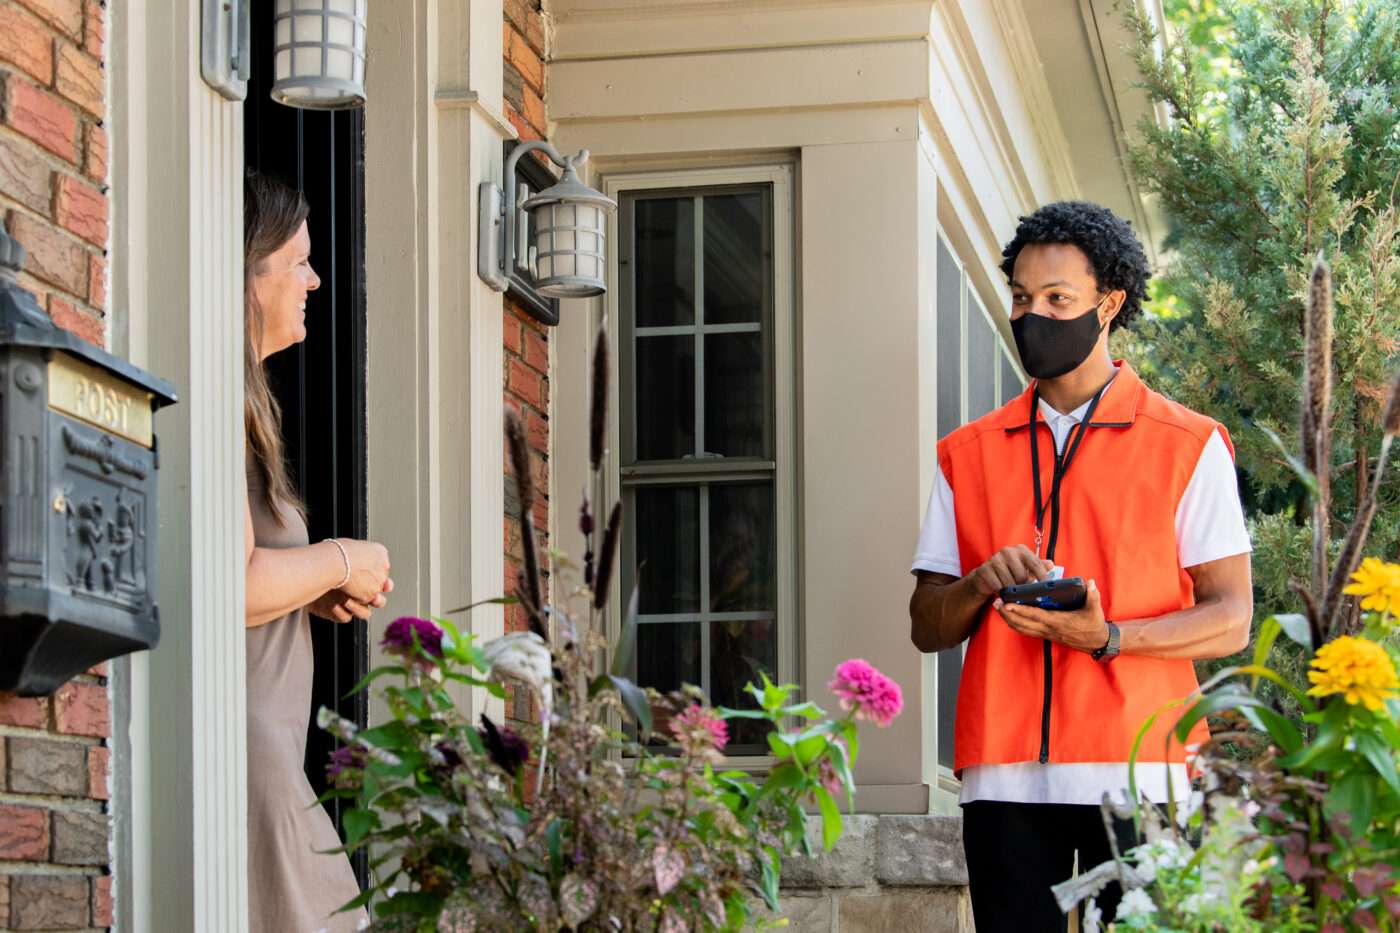 Door-to-door canvasser discussing charitable donation with homeowner